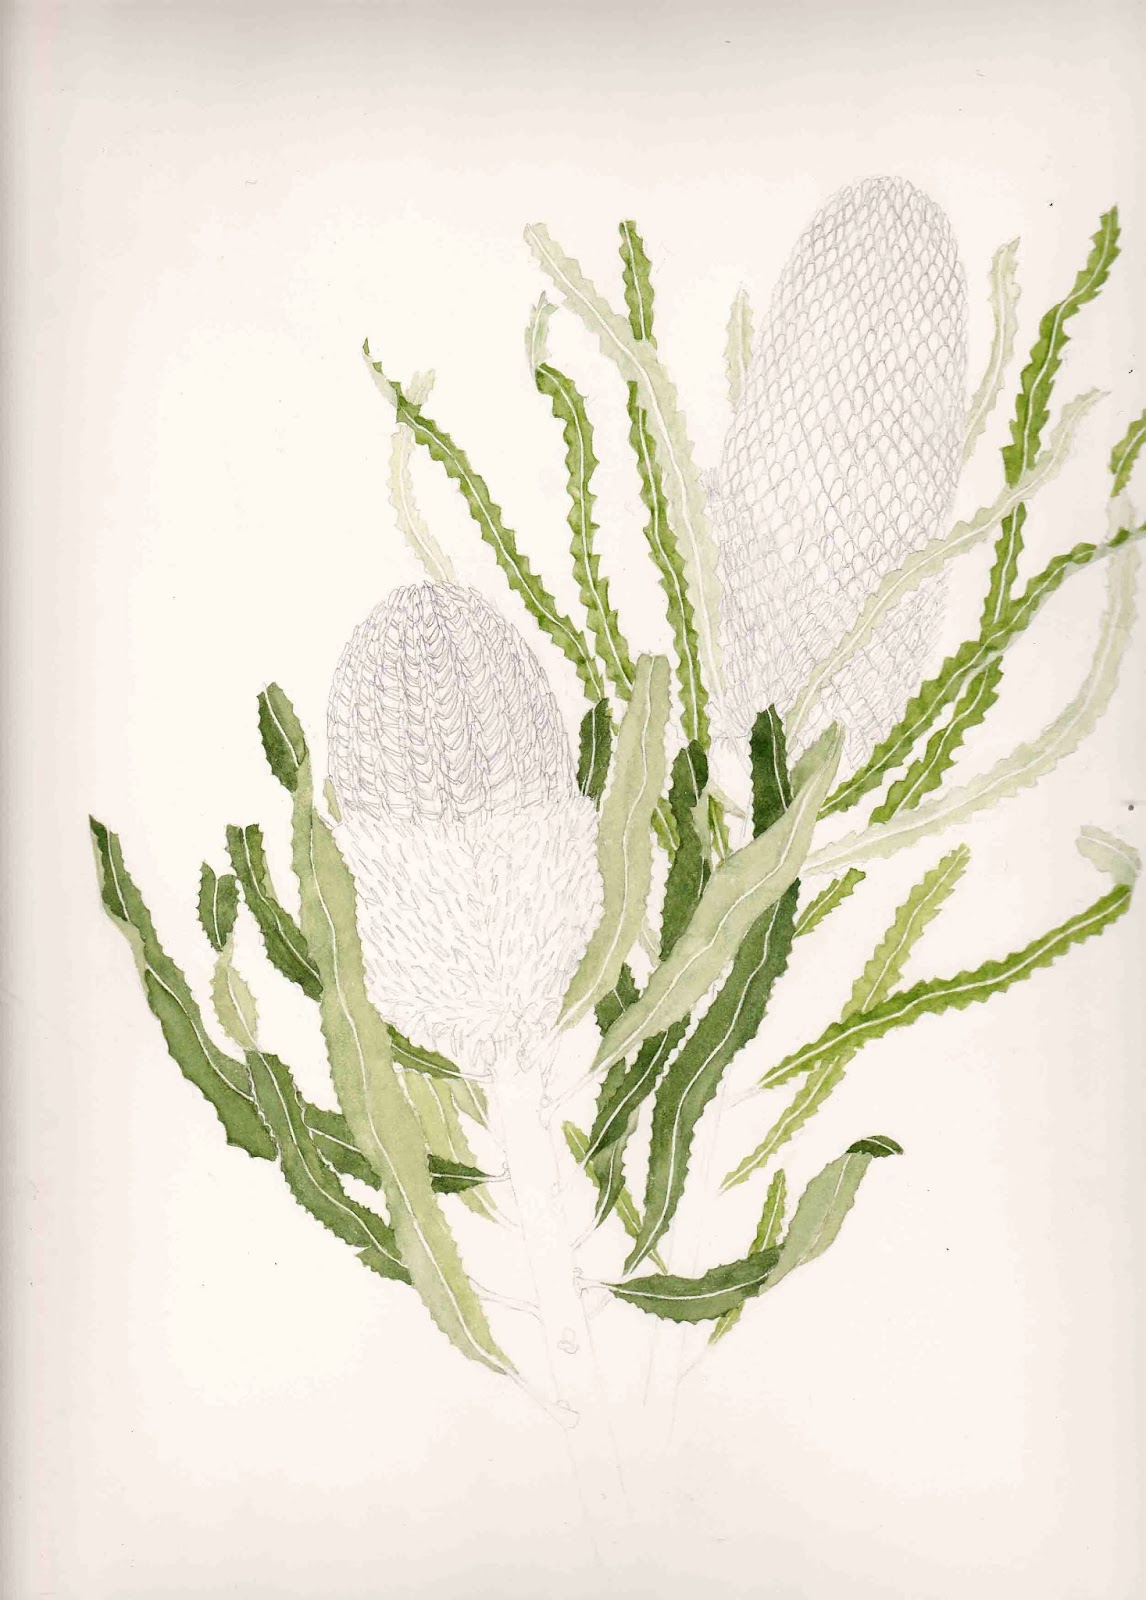 Botanical Art - Holiday Sketching: More banksias